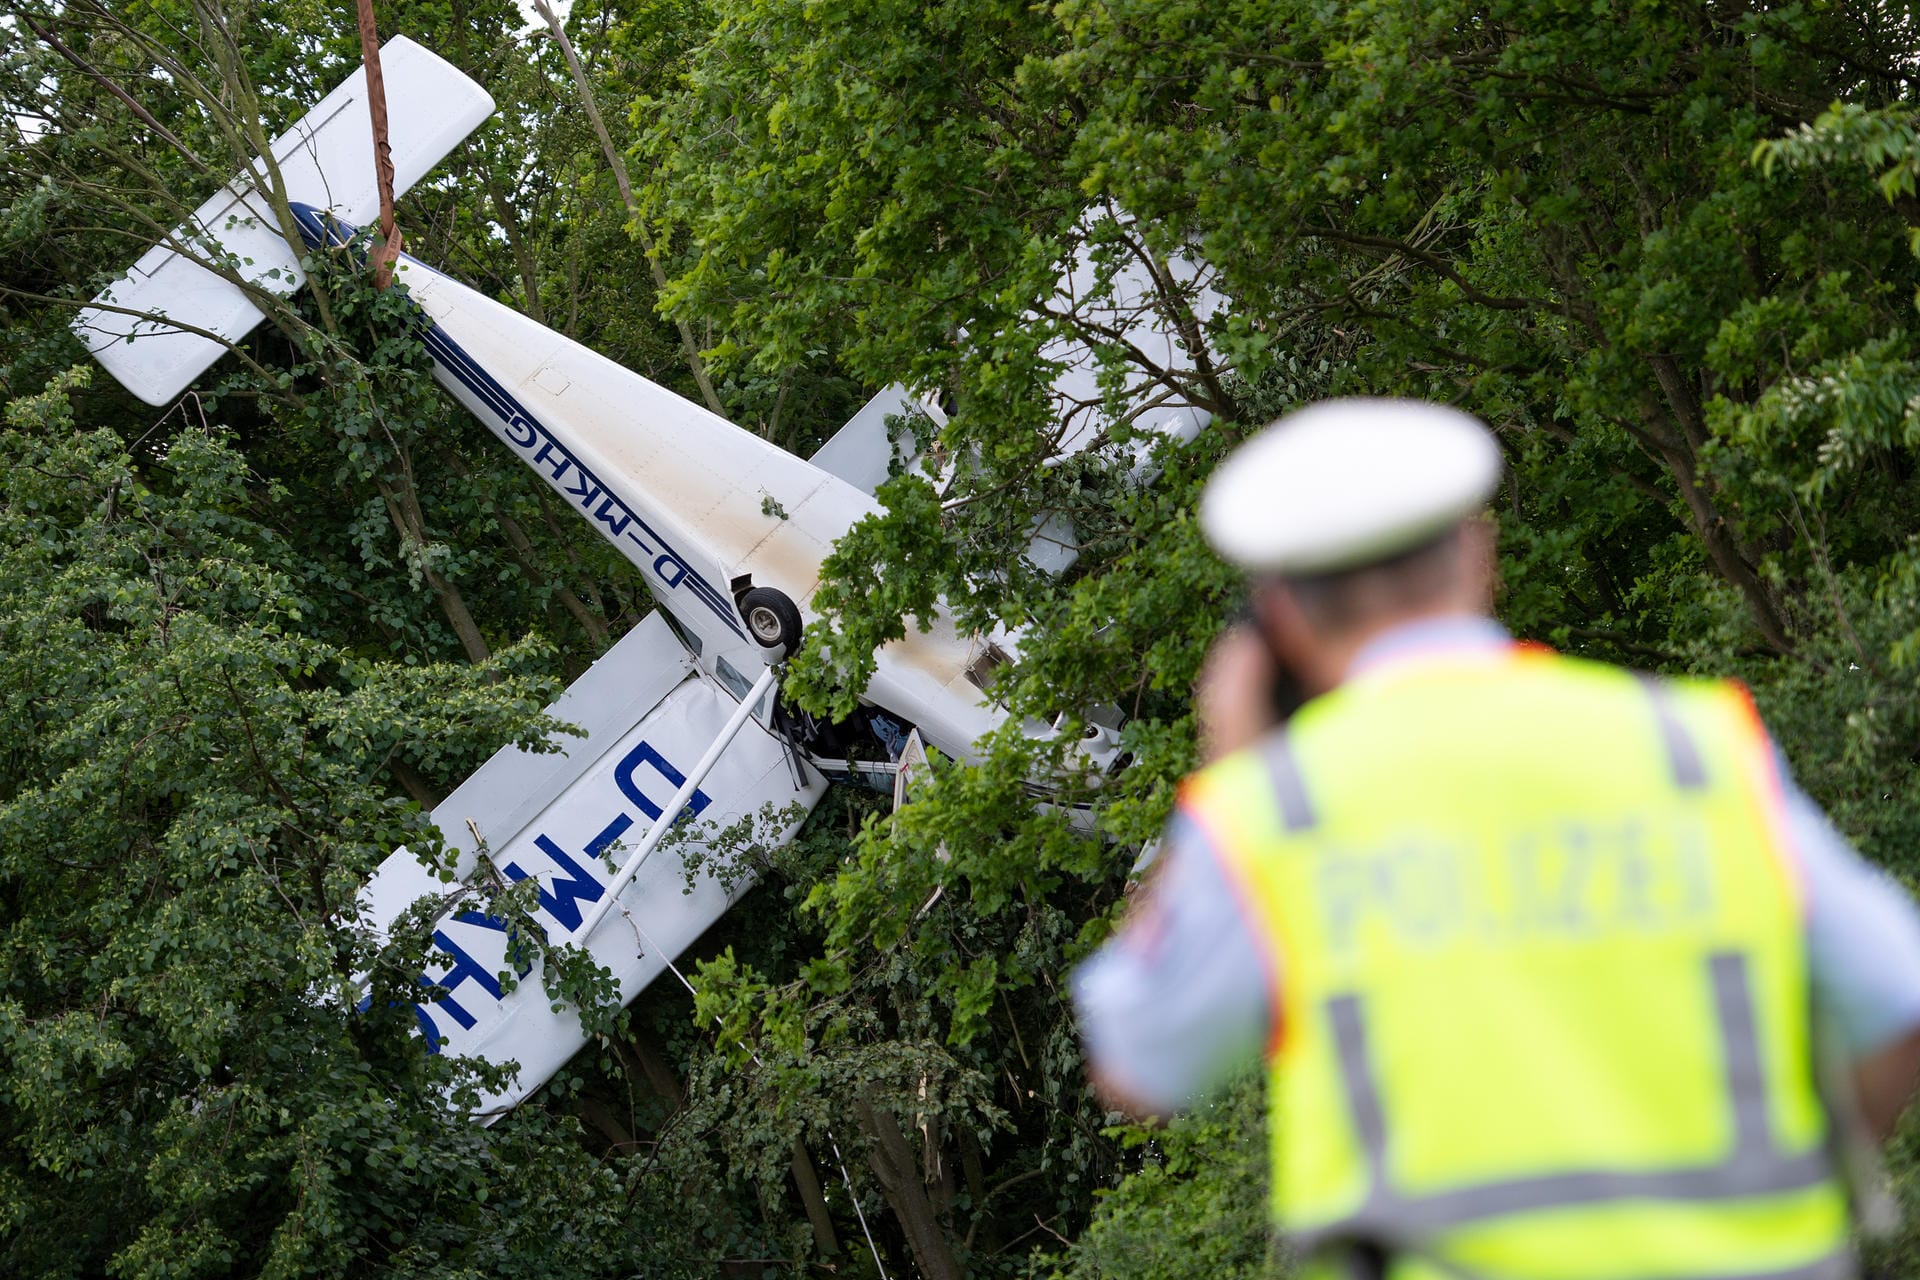 Nach bisherigen Erkenntnissen ist das Flugzeug beim Landeanflug wahrscheinlich vom Seitenwind in den Baum gedrückt worden.